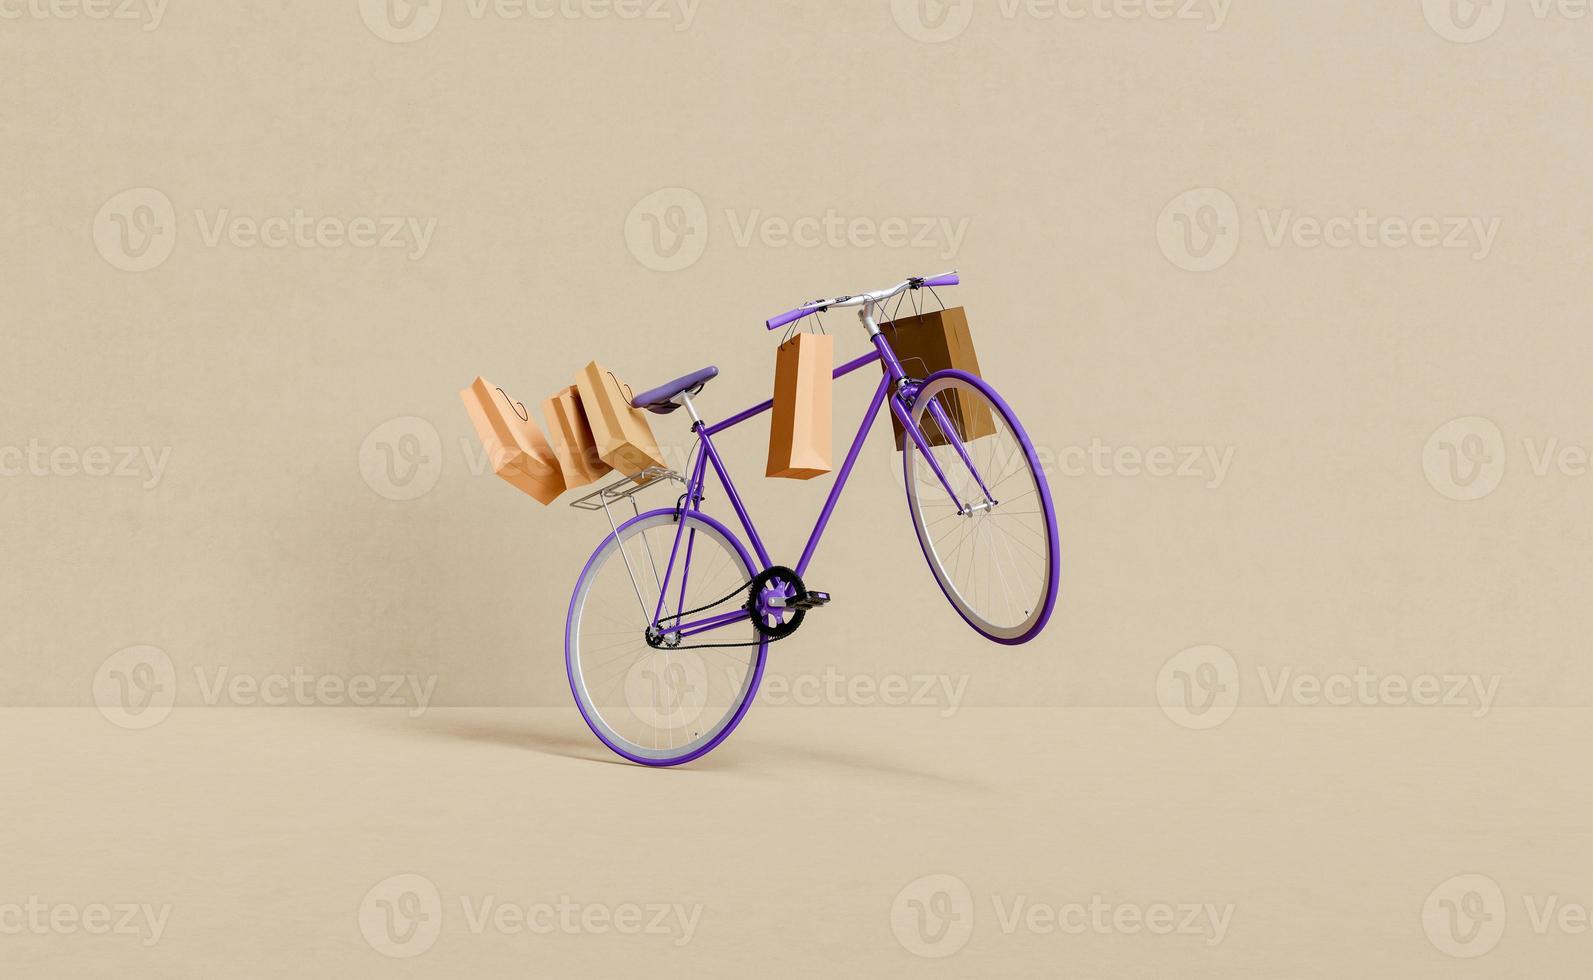 retro cykel flyger med shoppingkassar bifogade foto